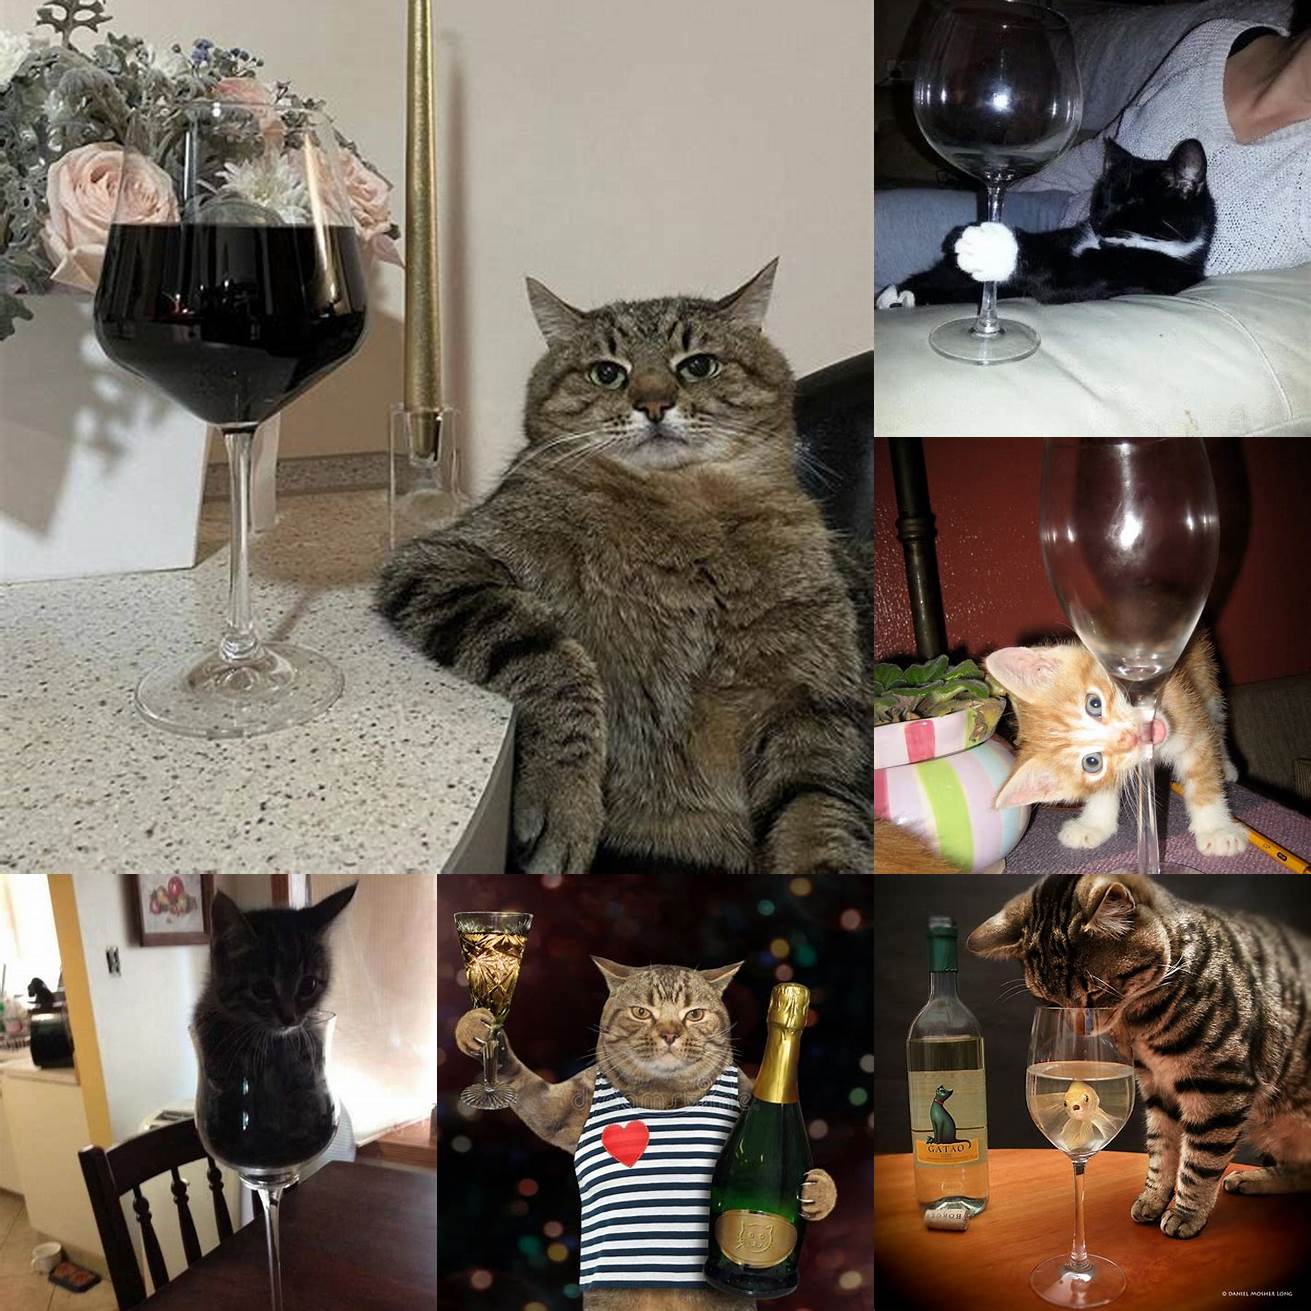 Cat in a champagne glass